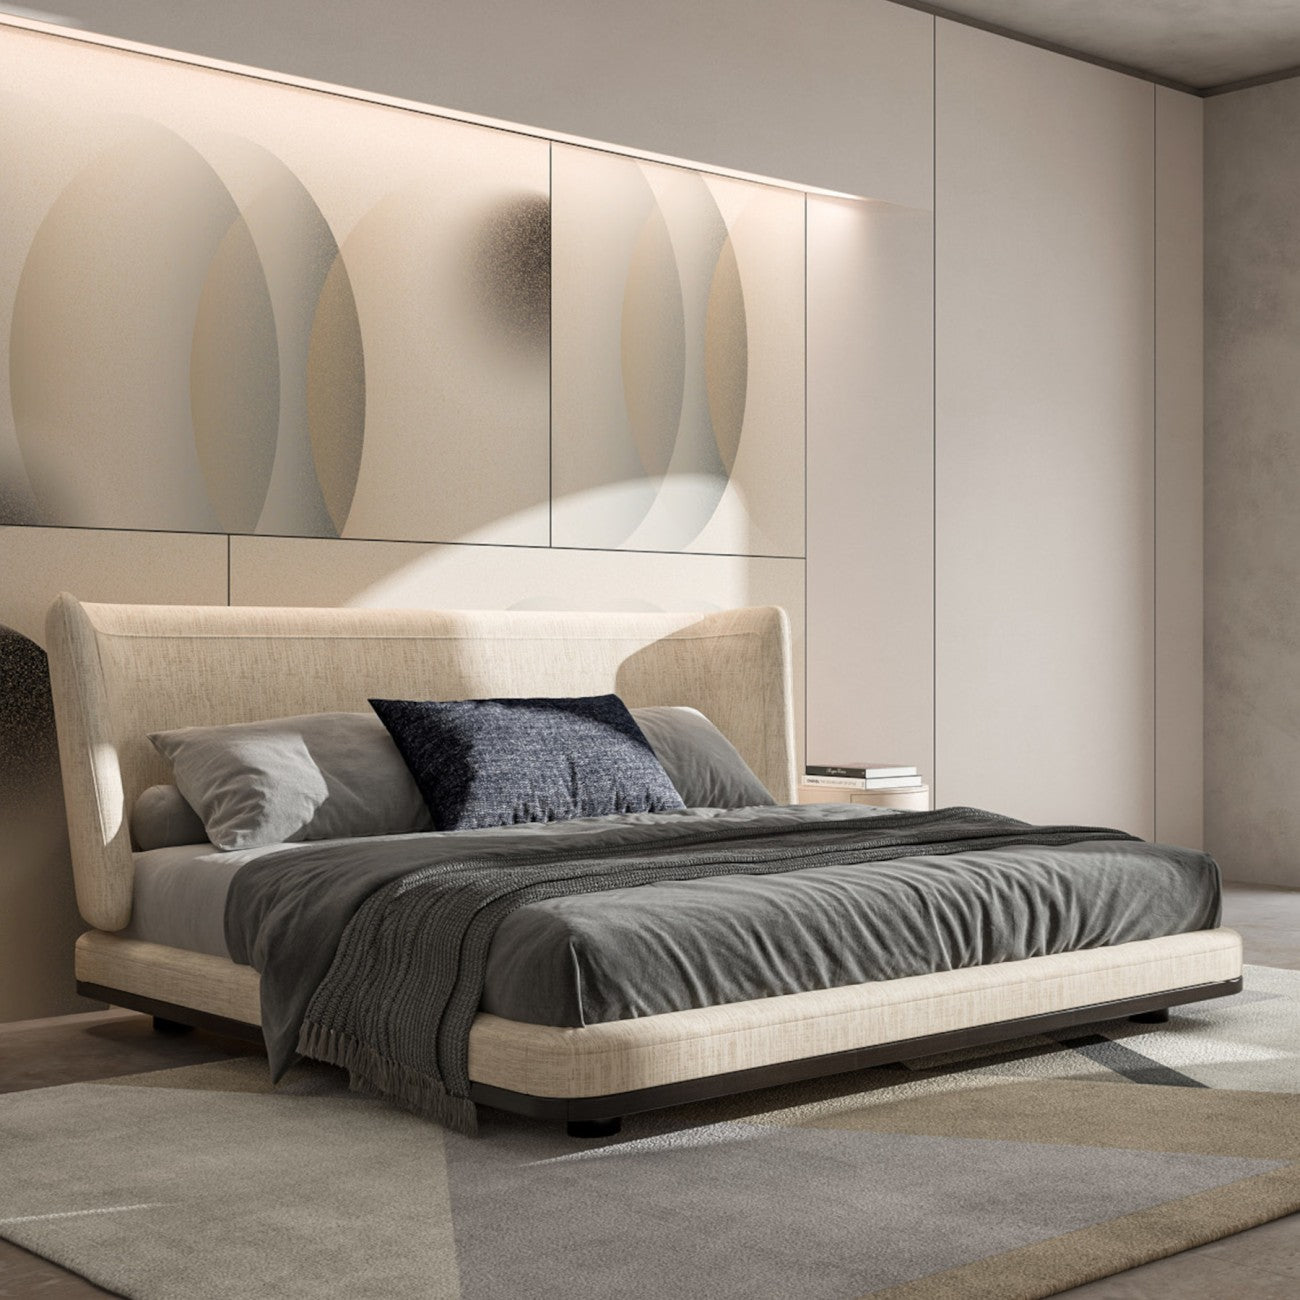 CPRN HOMOOD | Marais Fabric King Bed  - $18,900.00